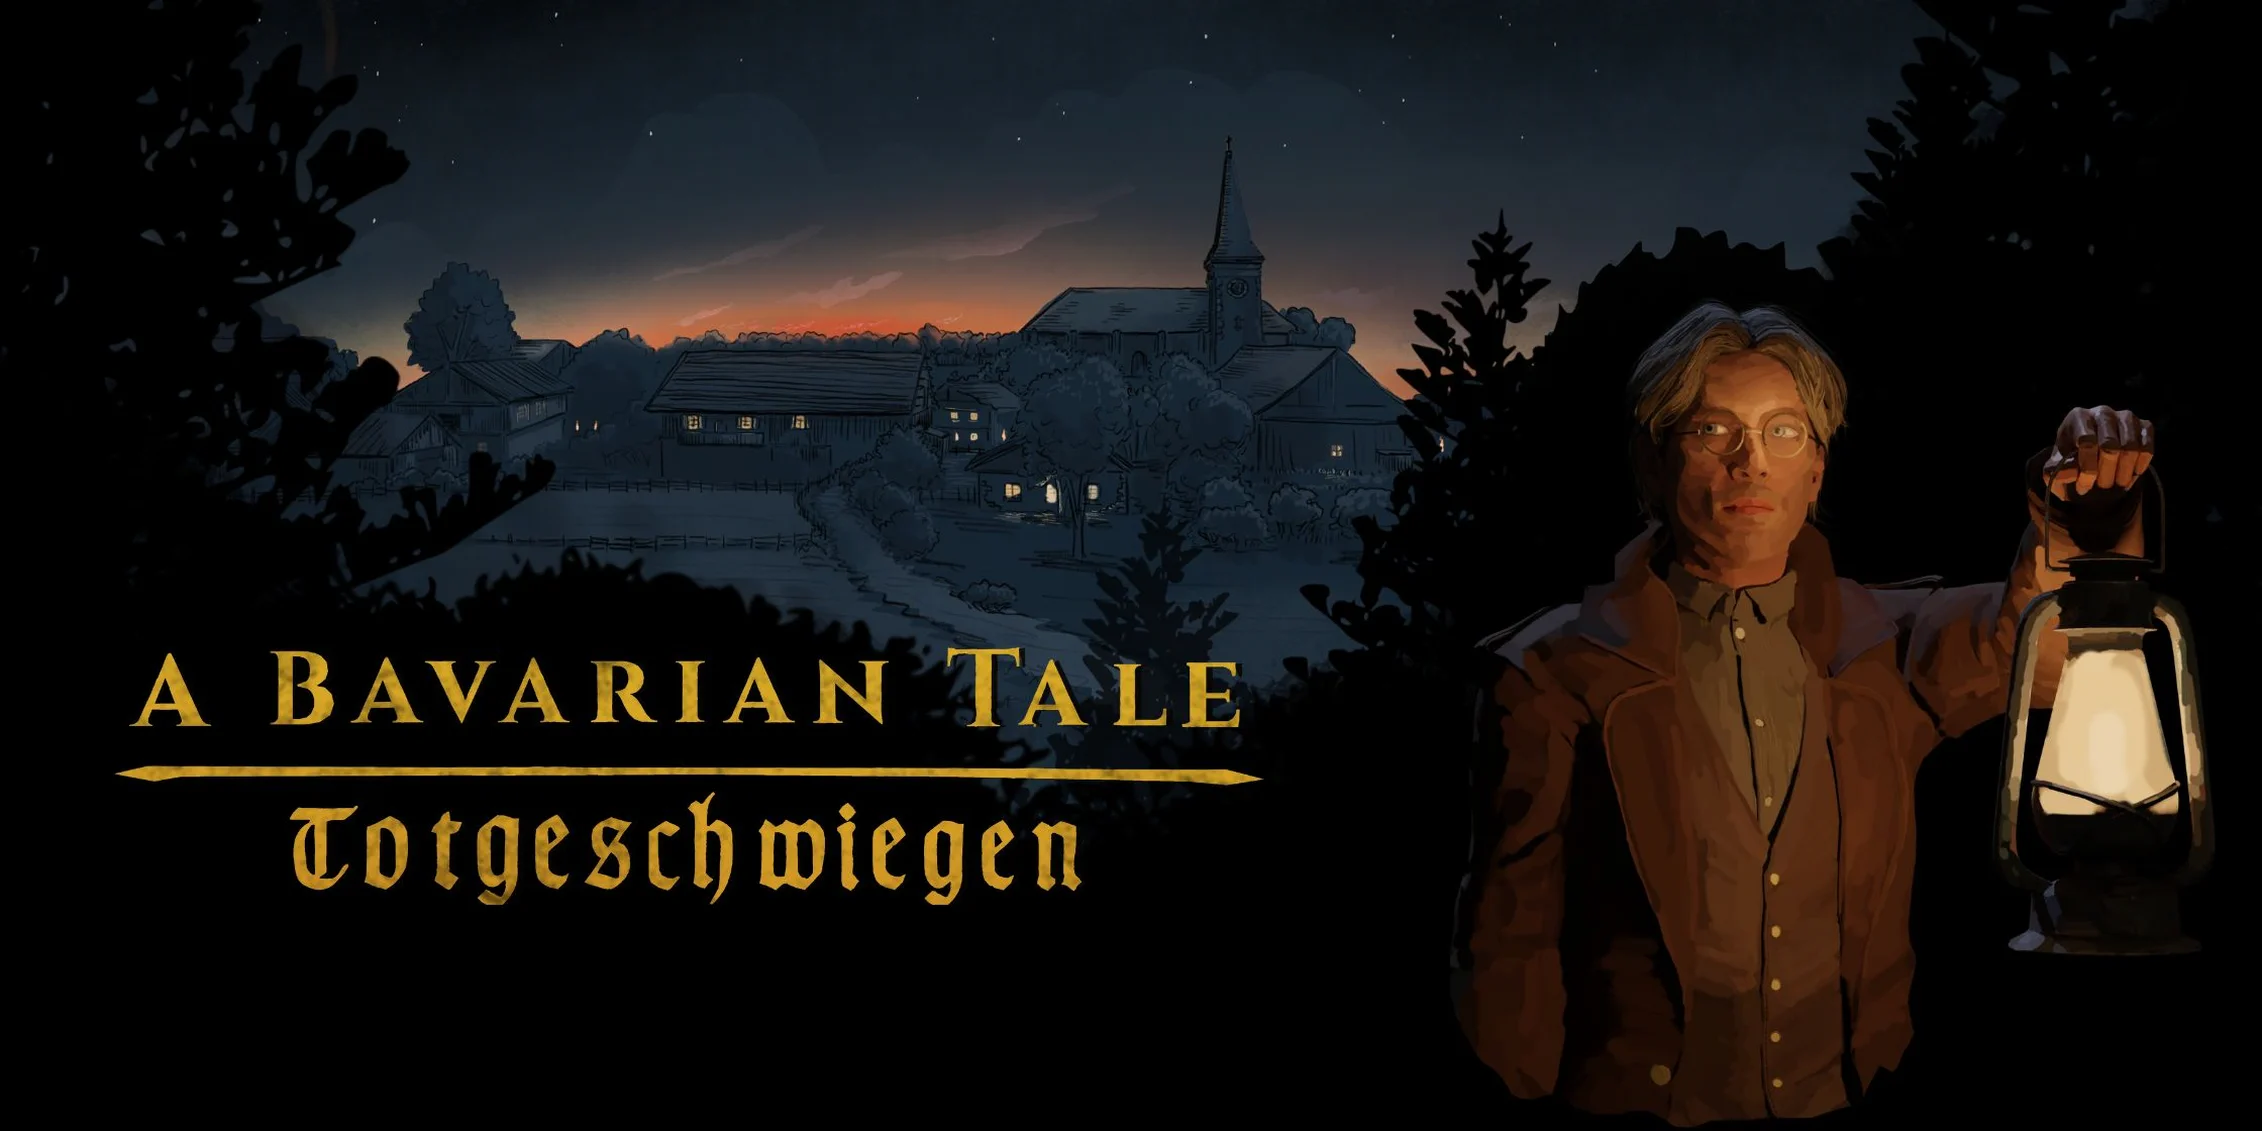 A Bavarian Tale: Totgeschwiegen — ролевой детектив в исторически достоверной Баварии.